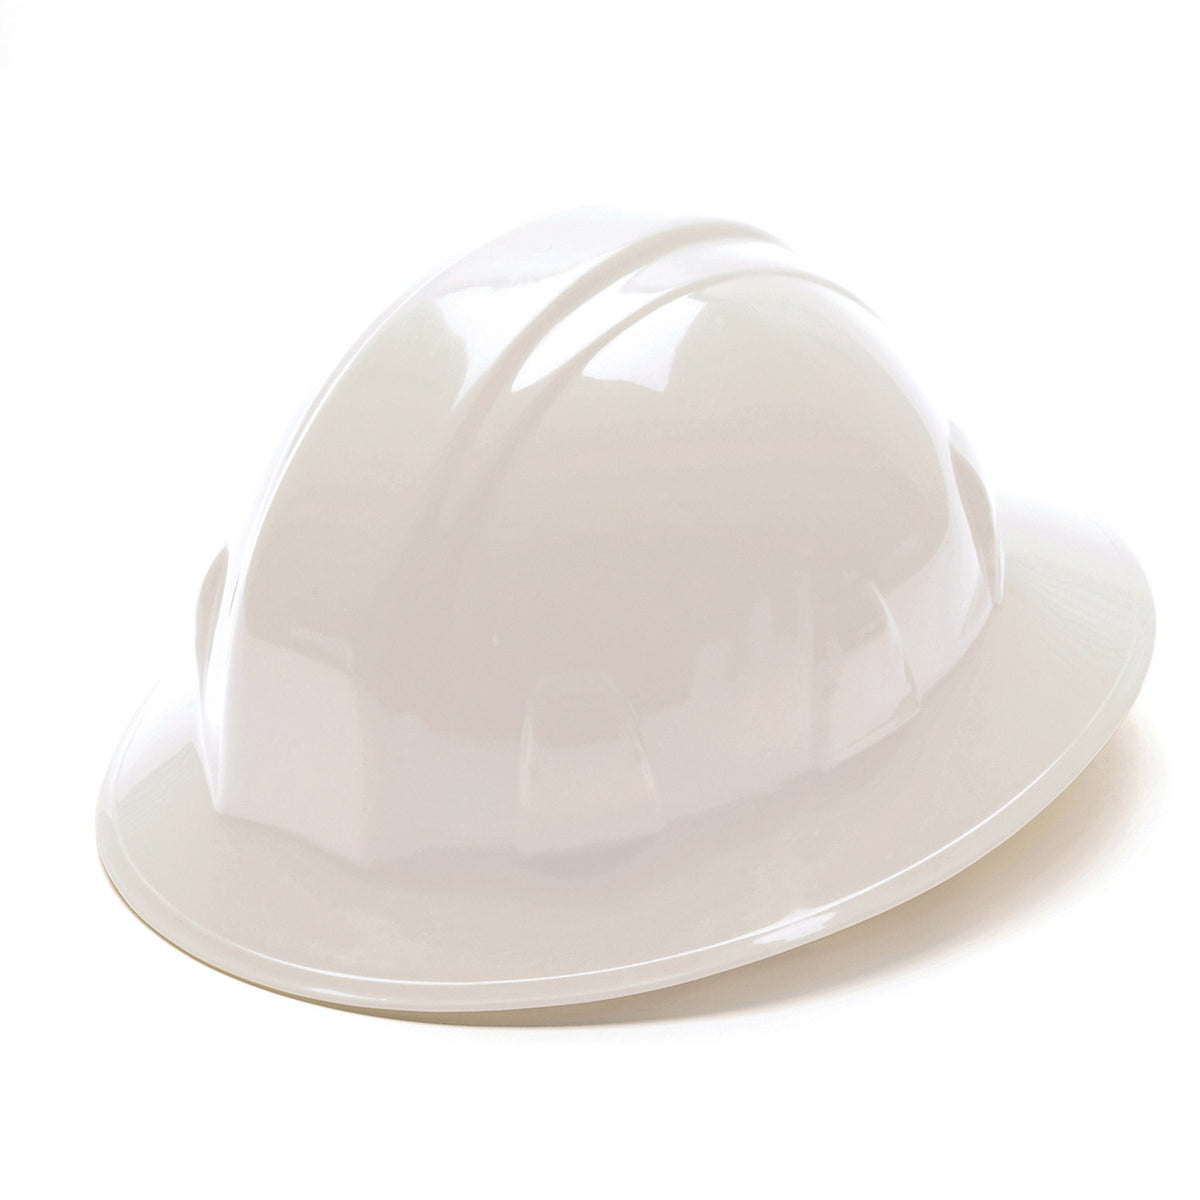 Pyramex SL Series Full Brim Hard Hat_White - Work World - Workwear, Work Boots, Safety Gear